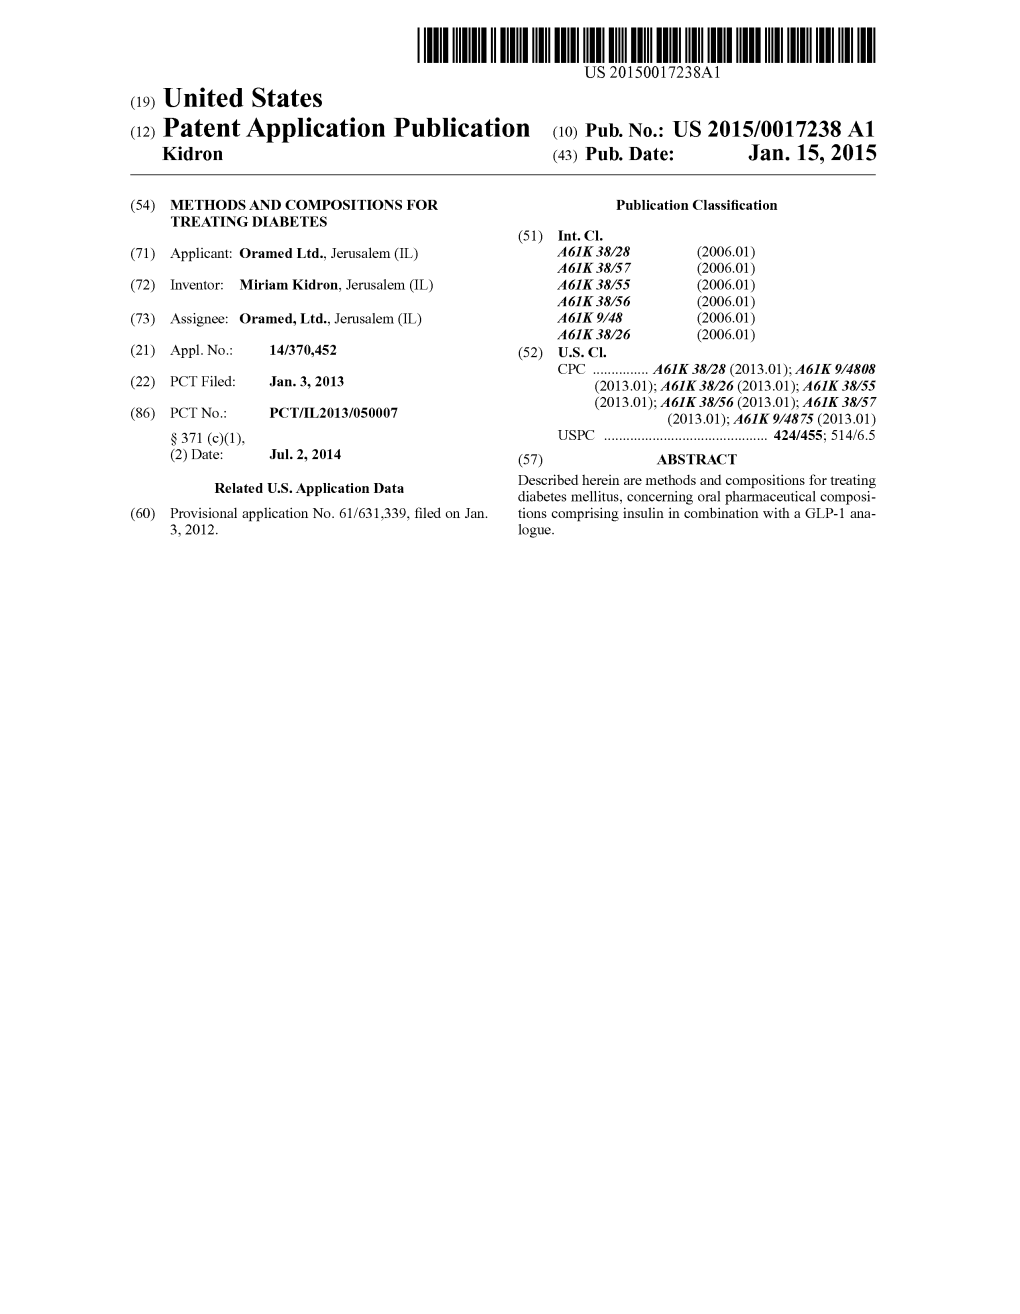 (12) Patent Application Publication (10) Pub. No.: US 2015/0017238 A1 Kidron (43) Pub